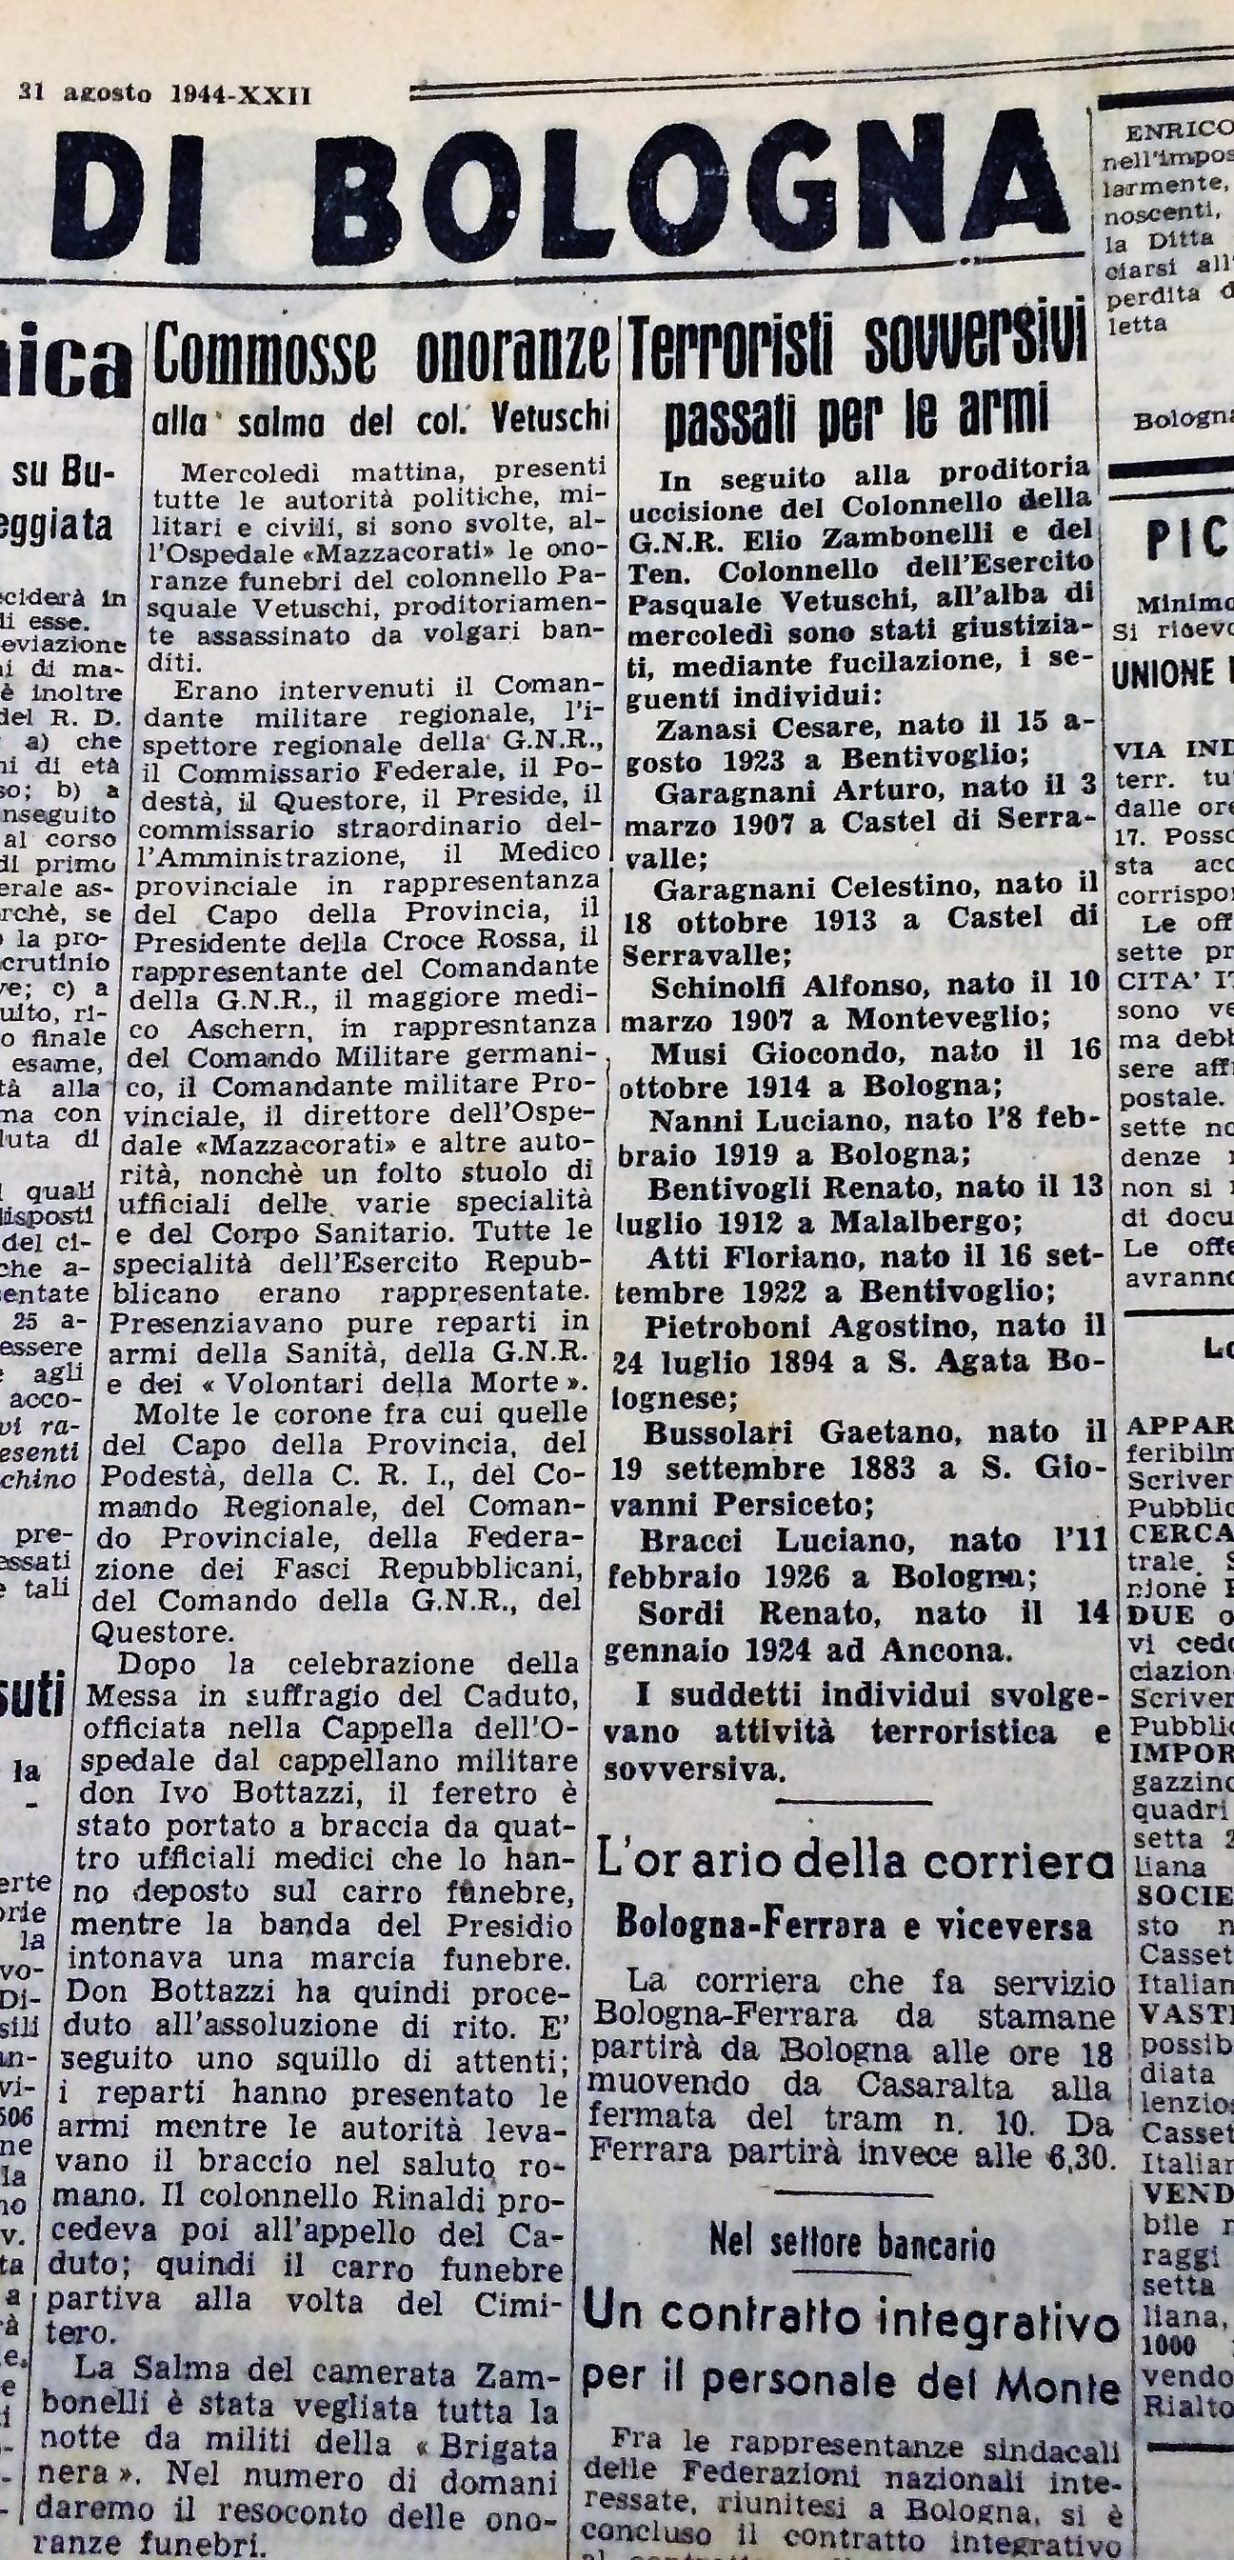 Il "Carlino" del 30 agosto 1944.